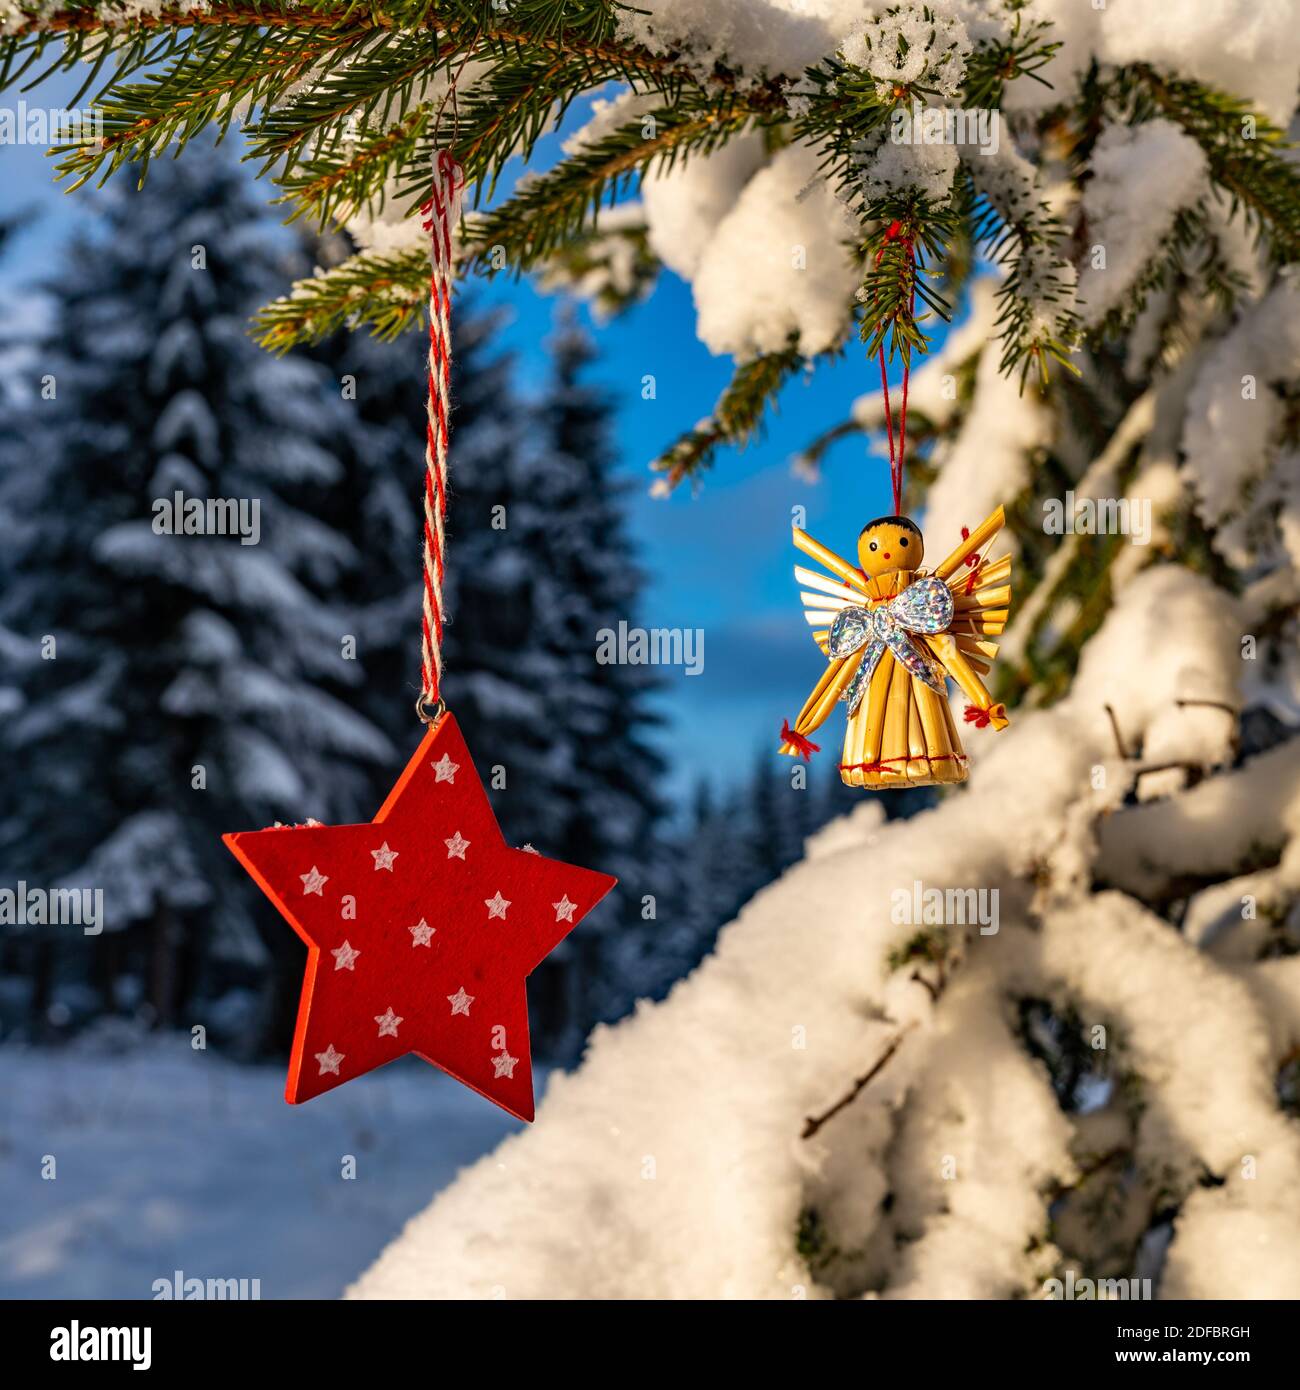 Weihnachten, Christbaumschmuck am Tannenbaum im frisch verschneiten Wald. Roter Stern und Strohengel. Decorazione di Natale nella foresta innevata. angel Foto Stock